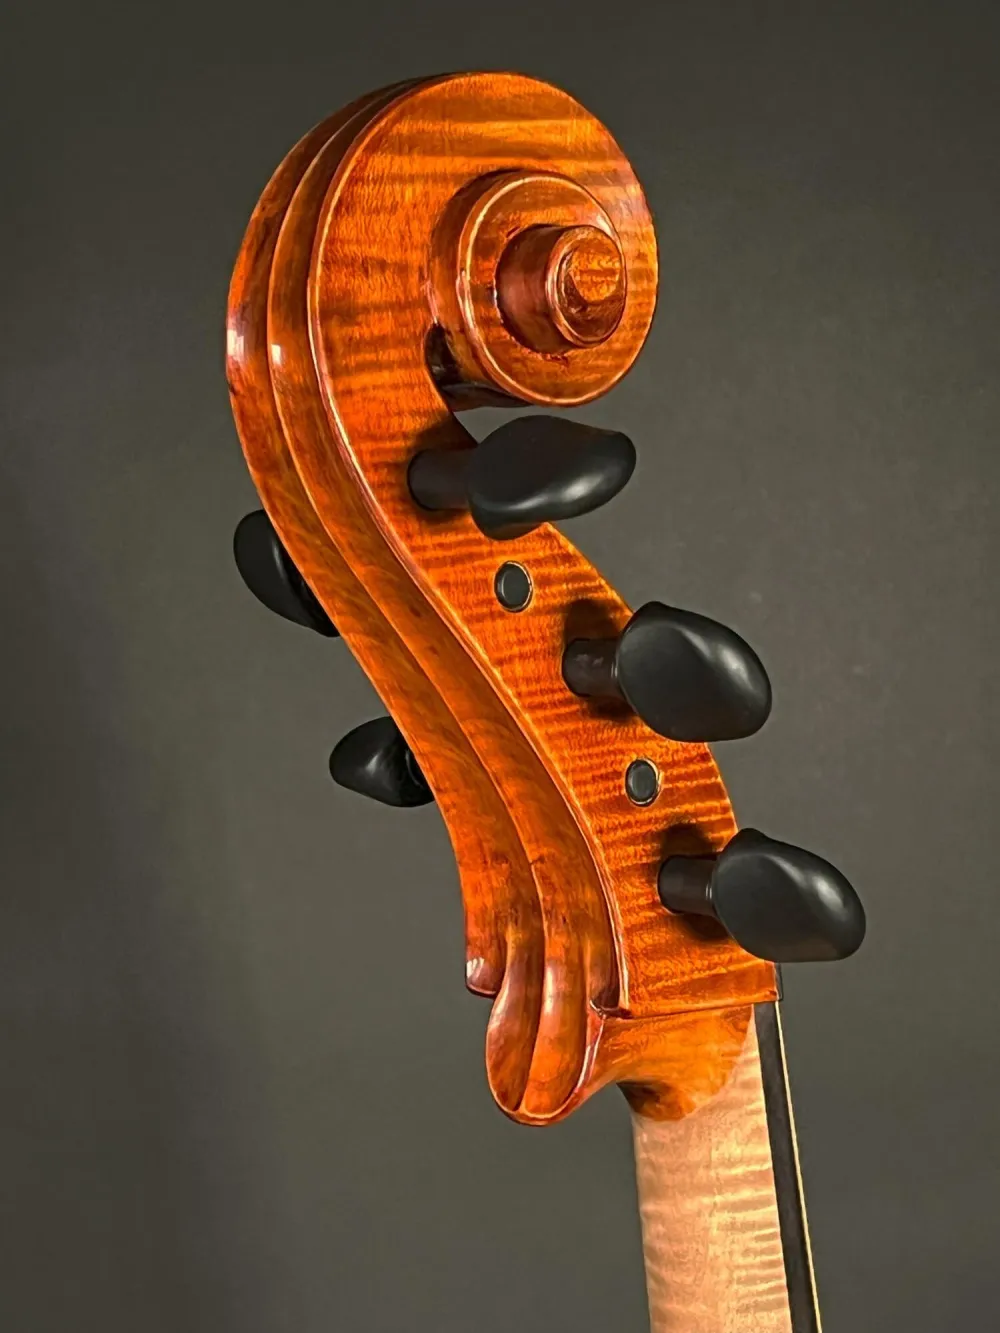 Schnecke- von der Seite unten -Detailansicht eines Reghino 5Saiter Cello Piccolo Handarbeit 2021